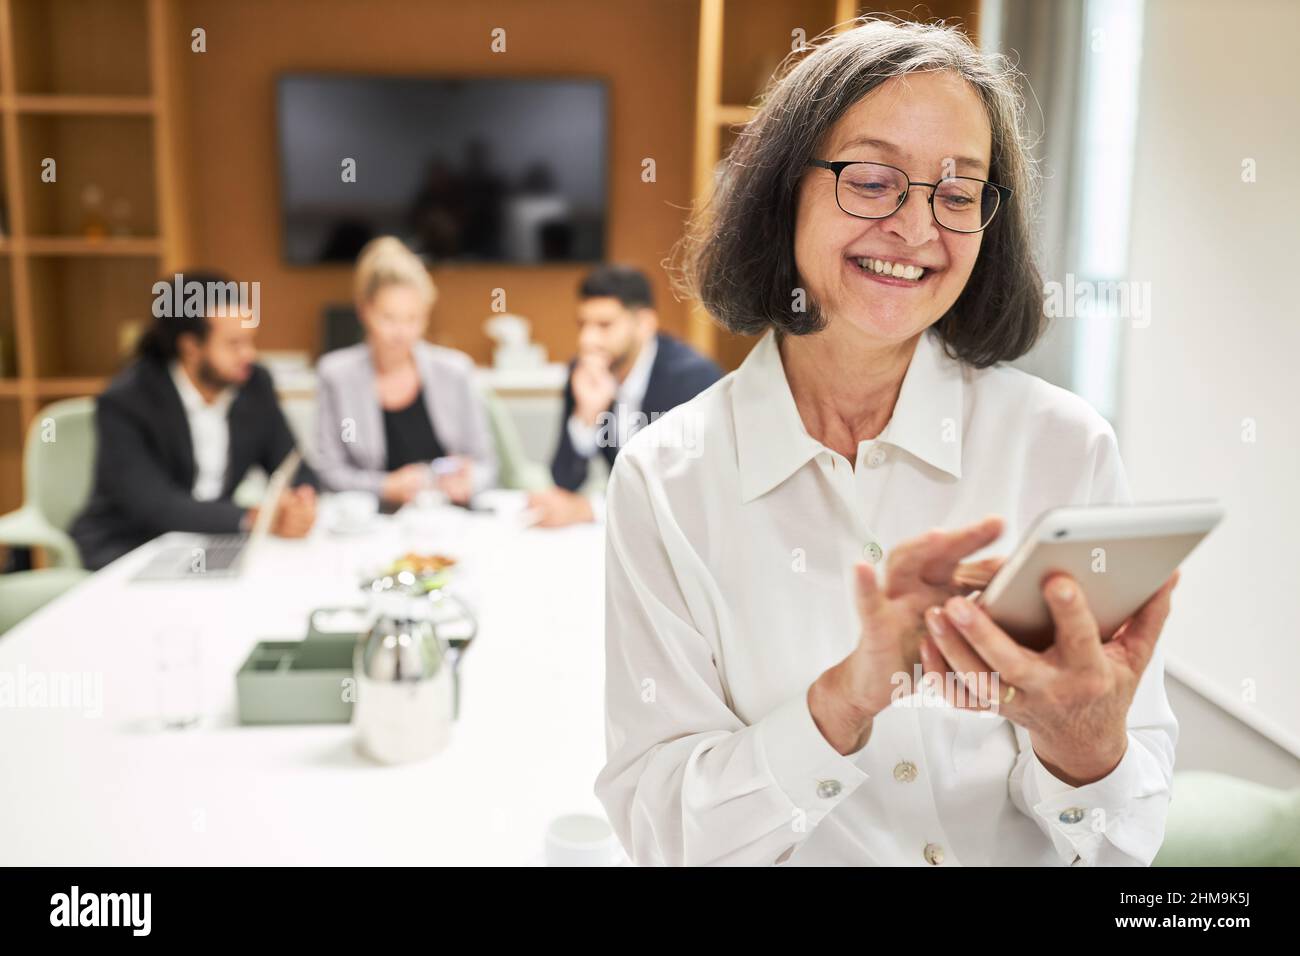 Glückliche Geschäftsfrau, die bei einem Geschäftstreffen im Büro eine sms-Nachricht auf das Smartphone schreibt Stockfoto